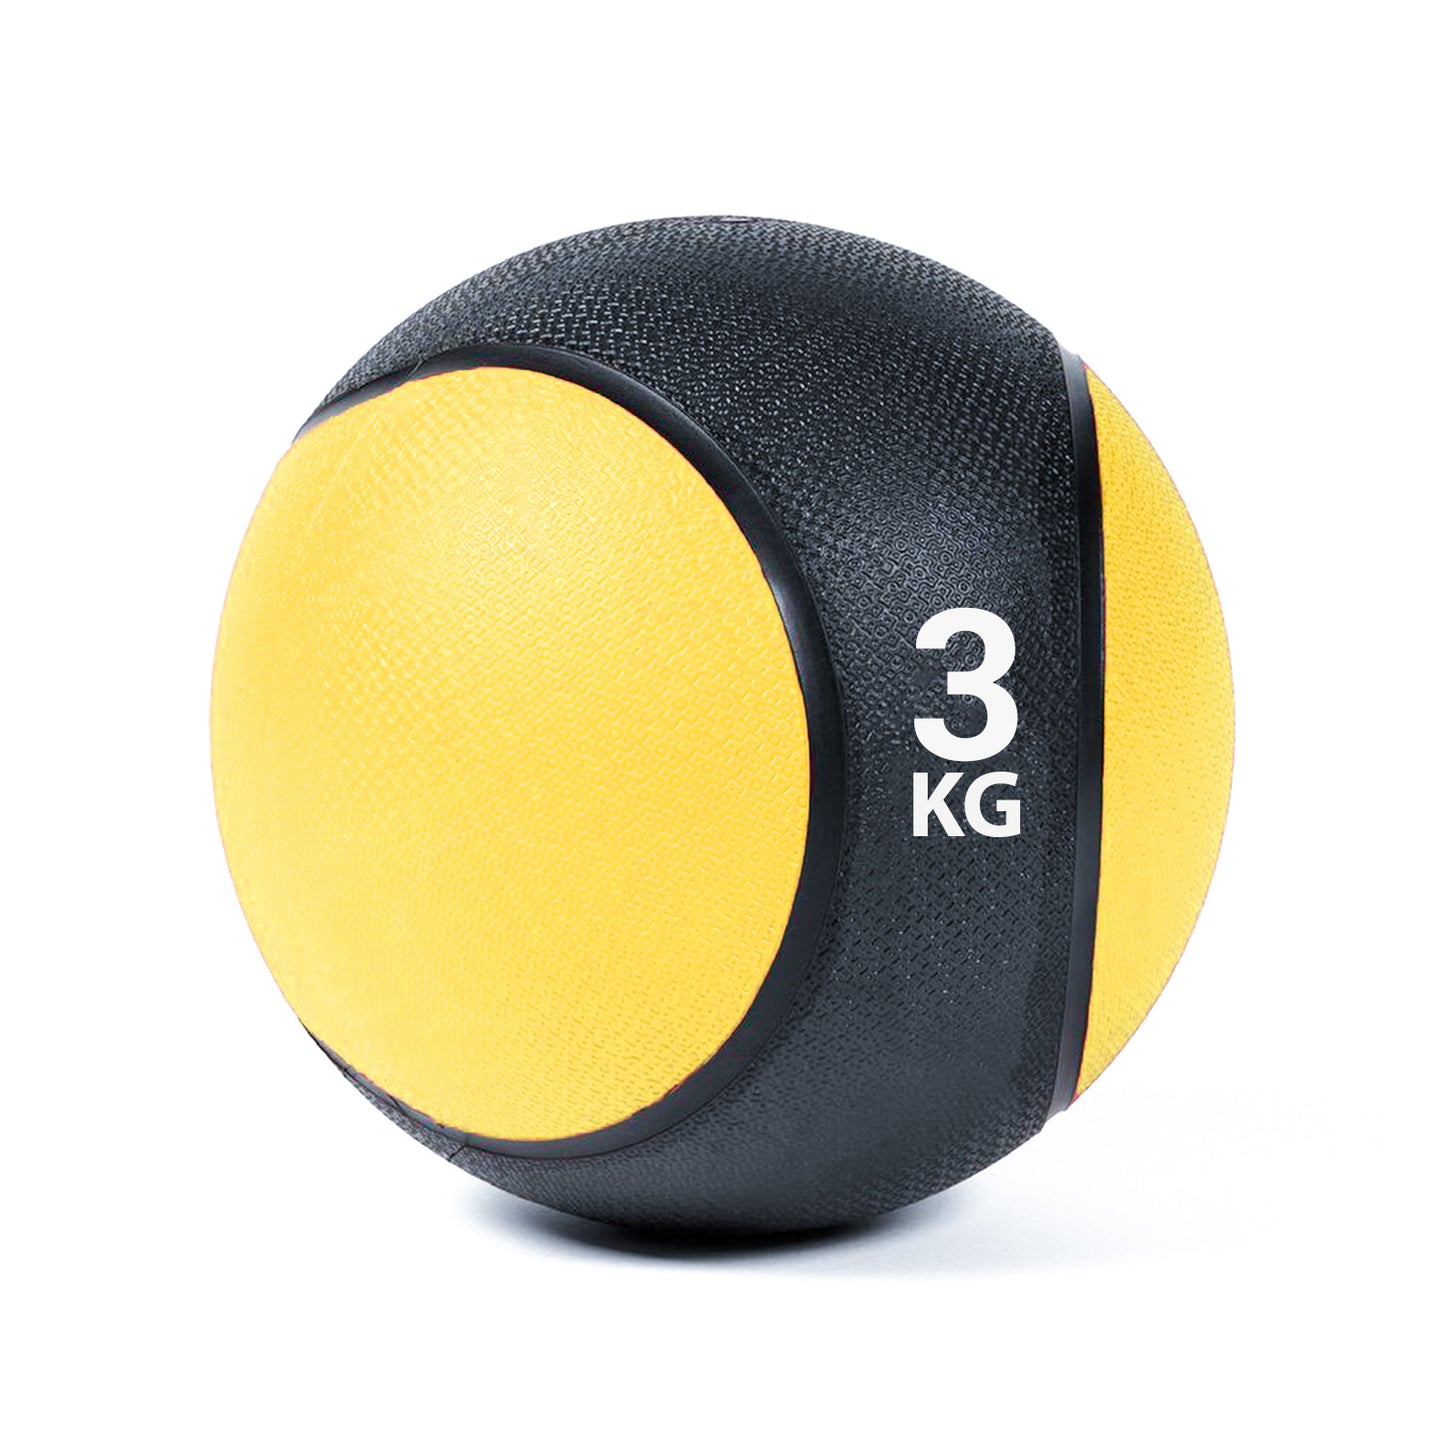 كرة طبية من المطاط لاعادة التأهيل و اللياقة البدنية - لون اسود و اصفر - وزن 3 كيلو جرام - Kanteen - كانتين